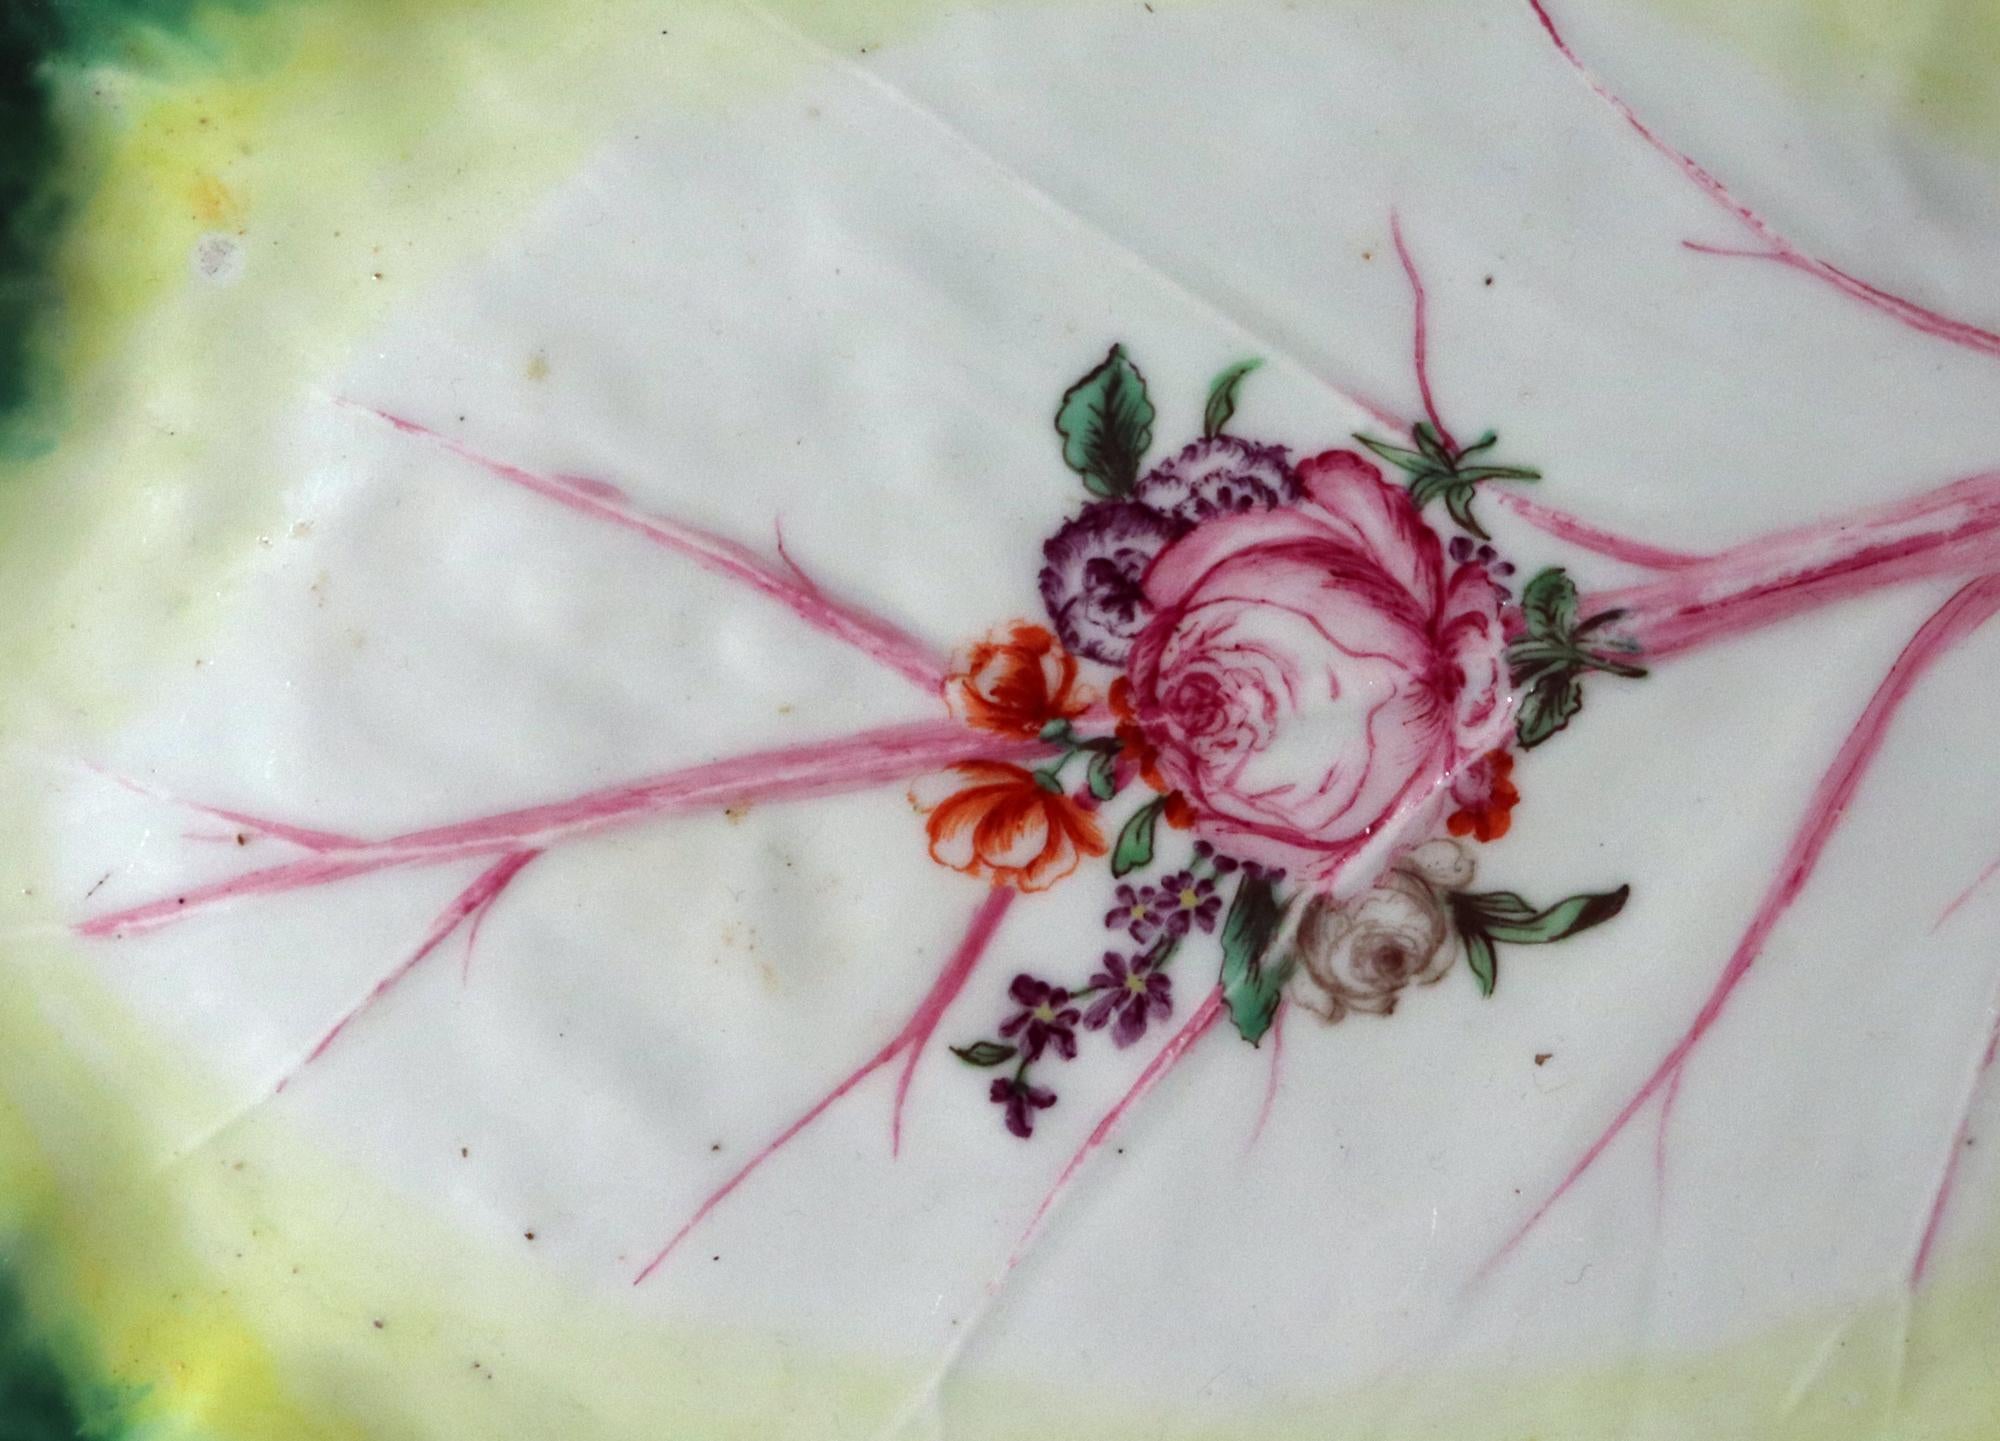 Plat à feuilles en porcelaine de Chelsea Tromp L'Oeil,
Ancre rouge Période,
vers 1755-1760

Ce grand plat à feuilles en trompe-l'oeil en porcelaine de Chelsea d'époque Red Anchor est coloré naturellement et modelé comme une feuille de chou